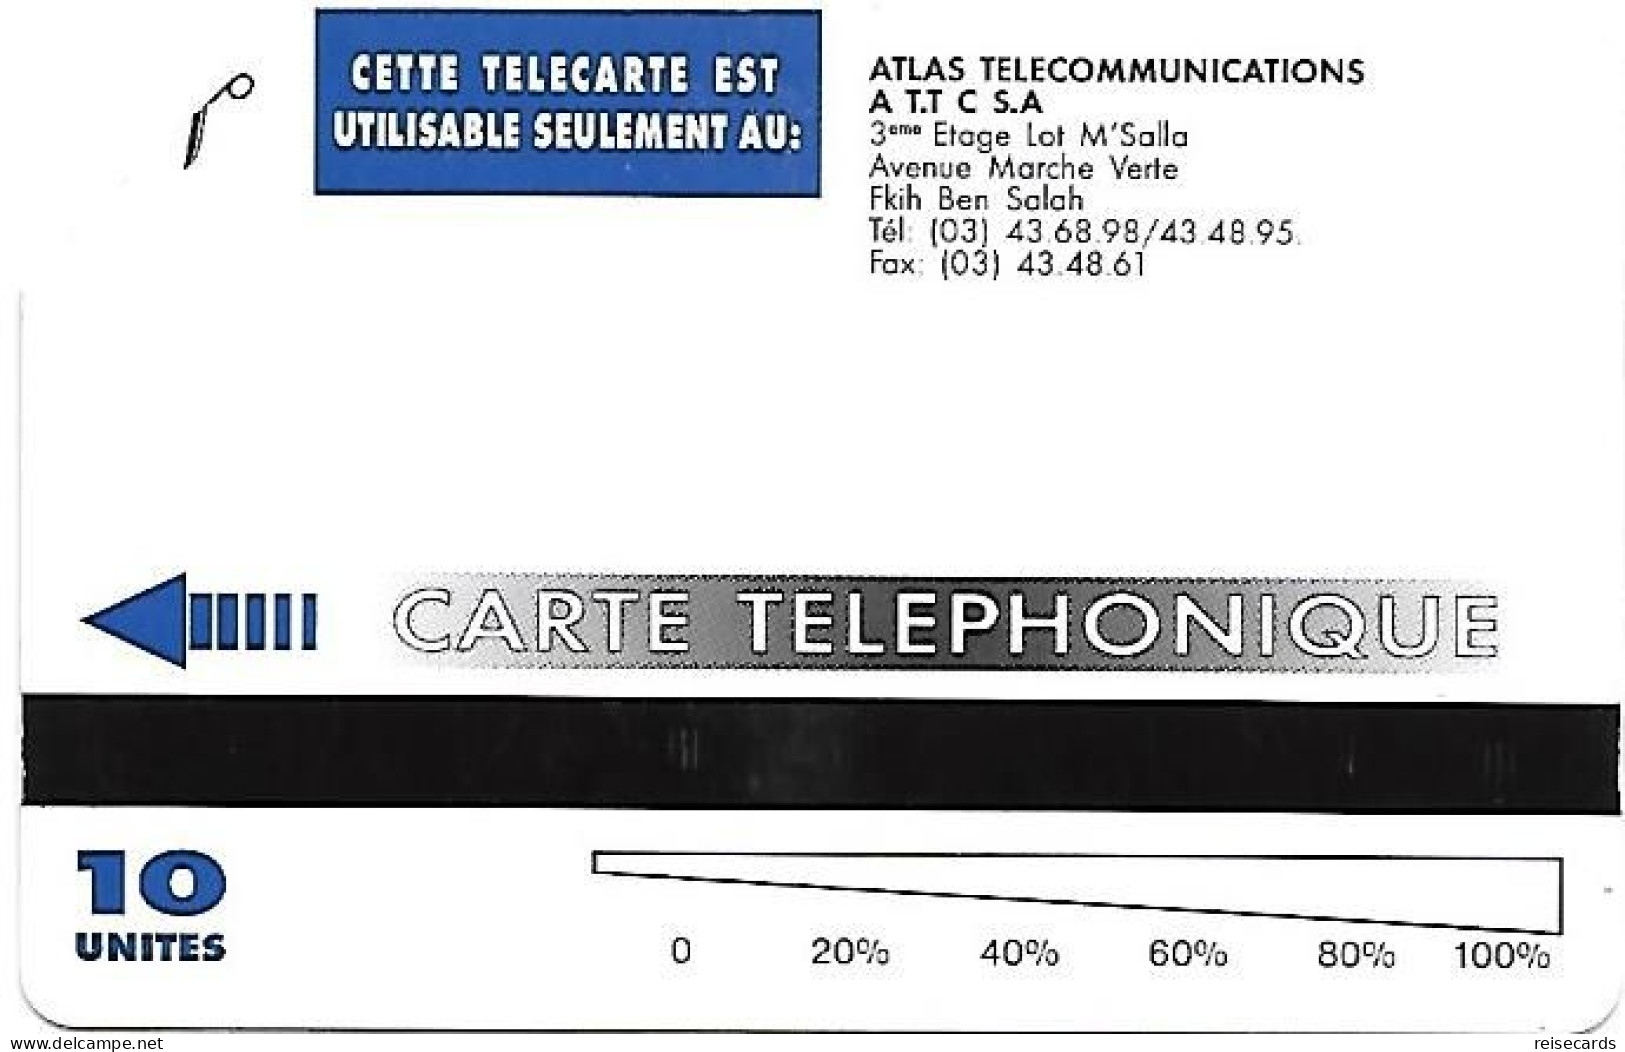 Morocco: Atlas Telecommunications - Beni Mellal - Marokko